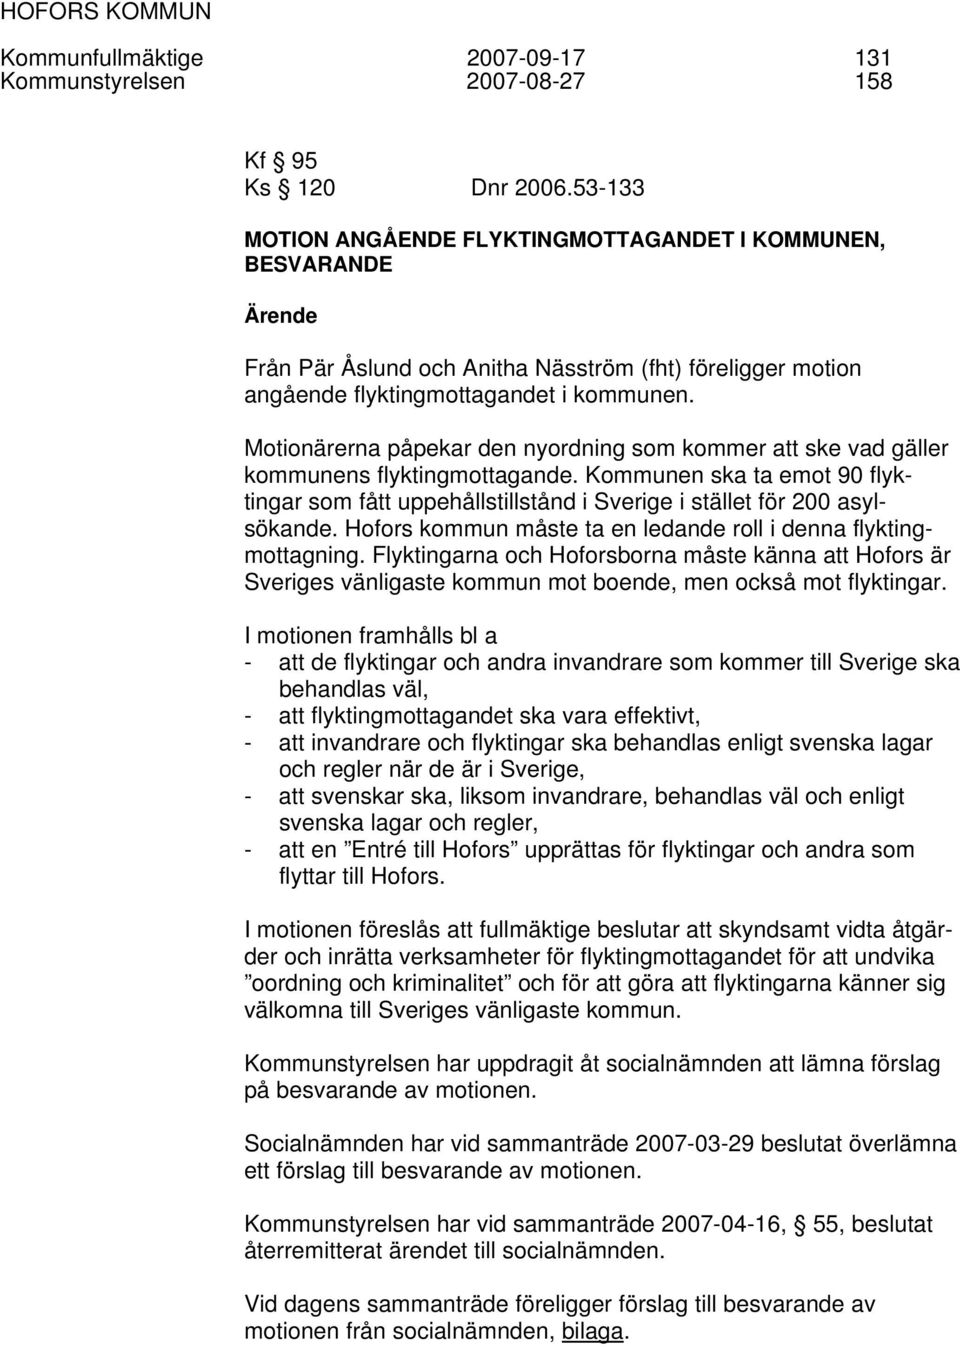 Motionärerna påpekar den nyordning som kommer att ske vad gäller kommunens flyktingmottagande. Kommunen ska ta emot 90 flyktingar som fått uppehållstillstånd i Sverige i stället för 200 asylsökande.